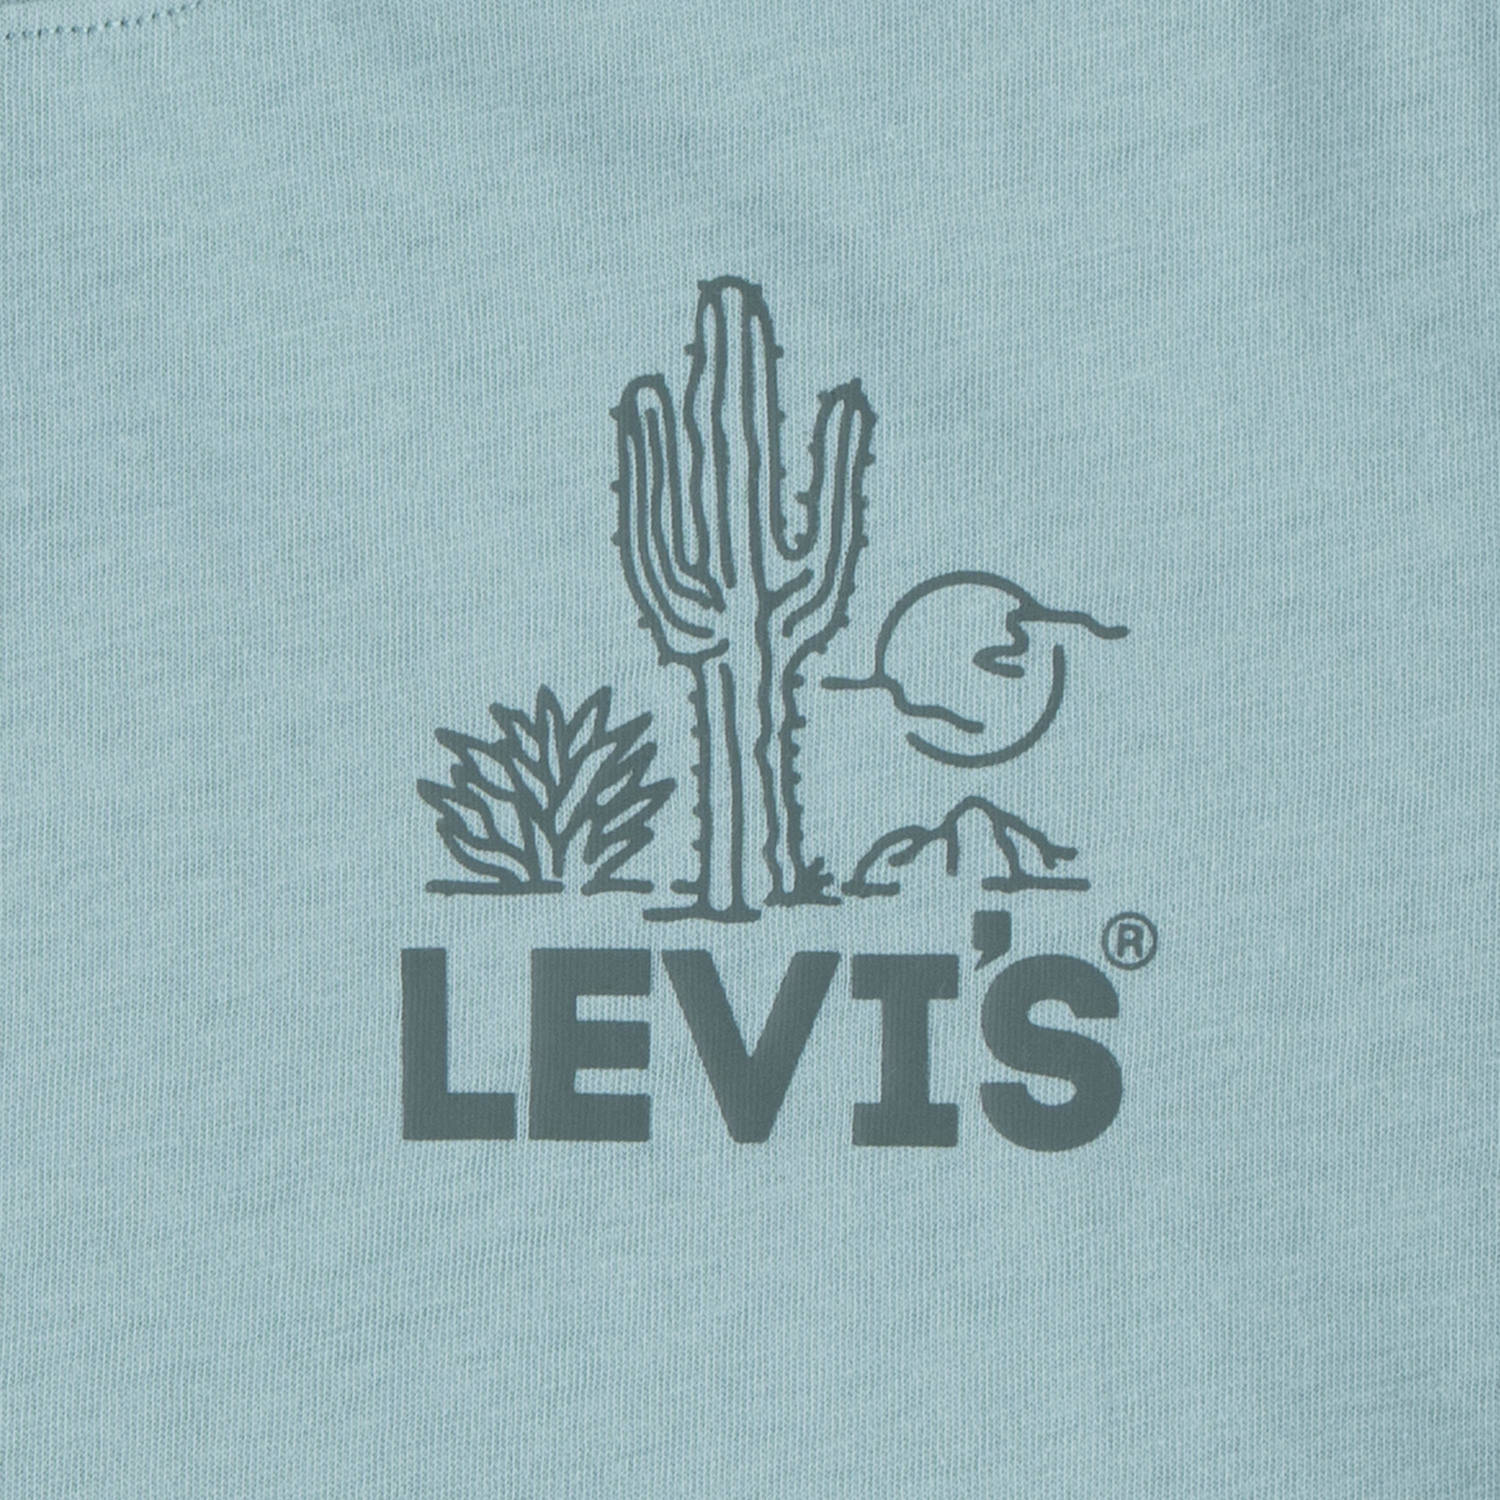 Levi's Kids T-shirt met backprint blauwgroen